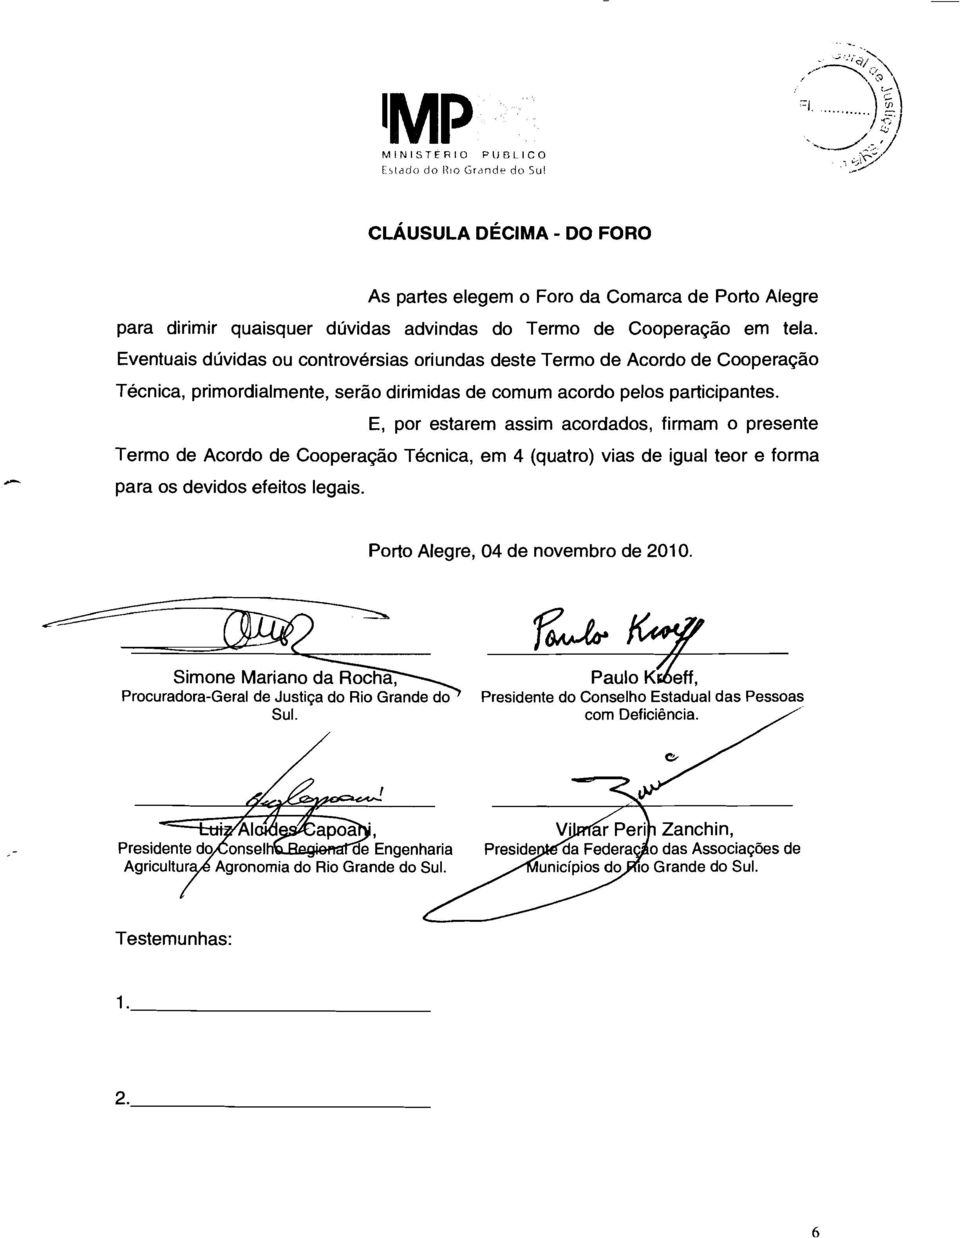 E, por estarem assim acordados, firmam o presente Termo de Acordo de Cooperação Técnica, em 4 (quatro) vias de igual teor e forma para os devidos efeitos legais. Porto Alegre, 04 de novembro de 2010.